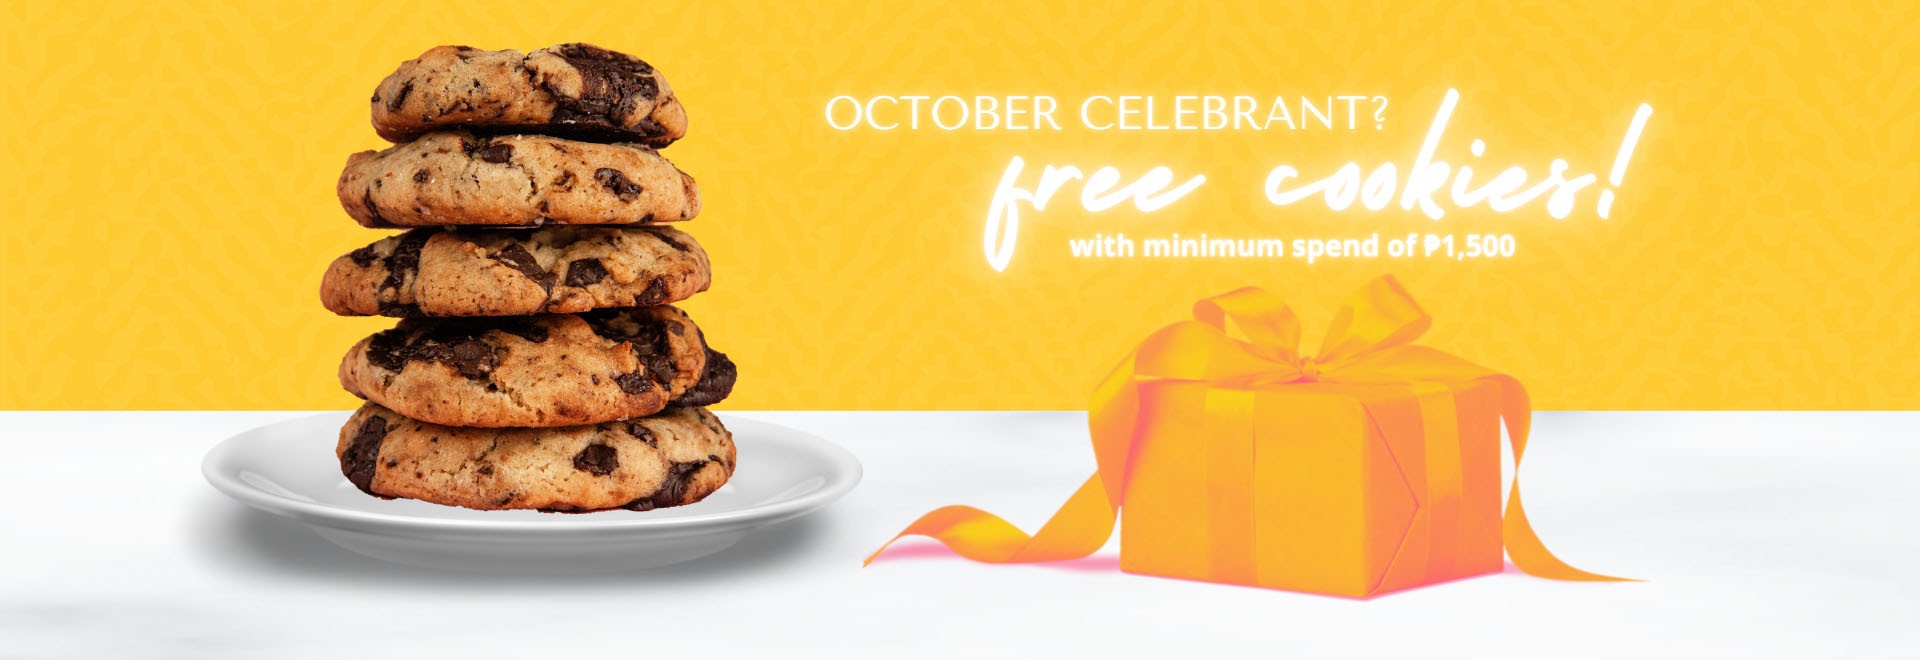 Free Cookies Birthday Celebrants